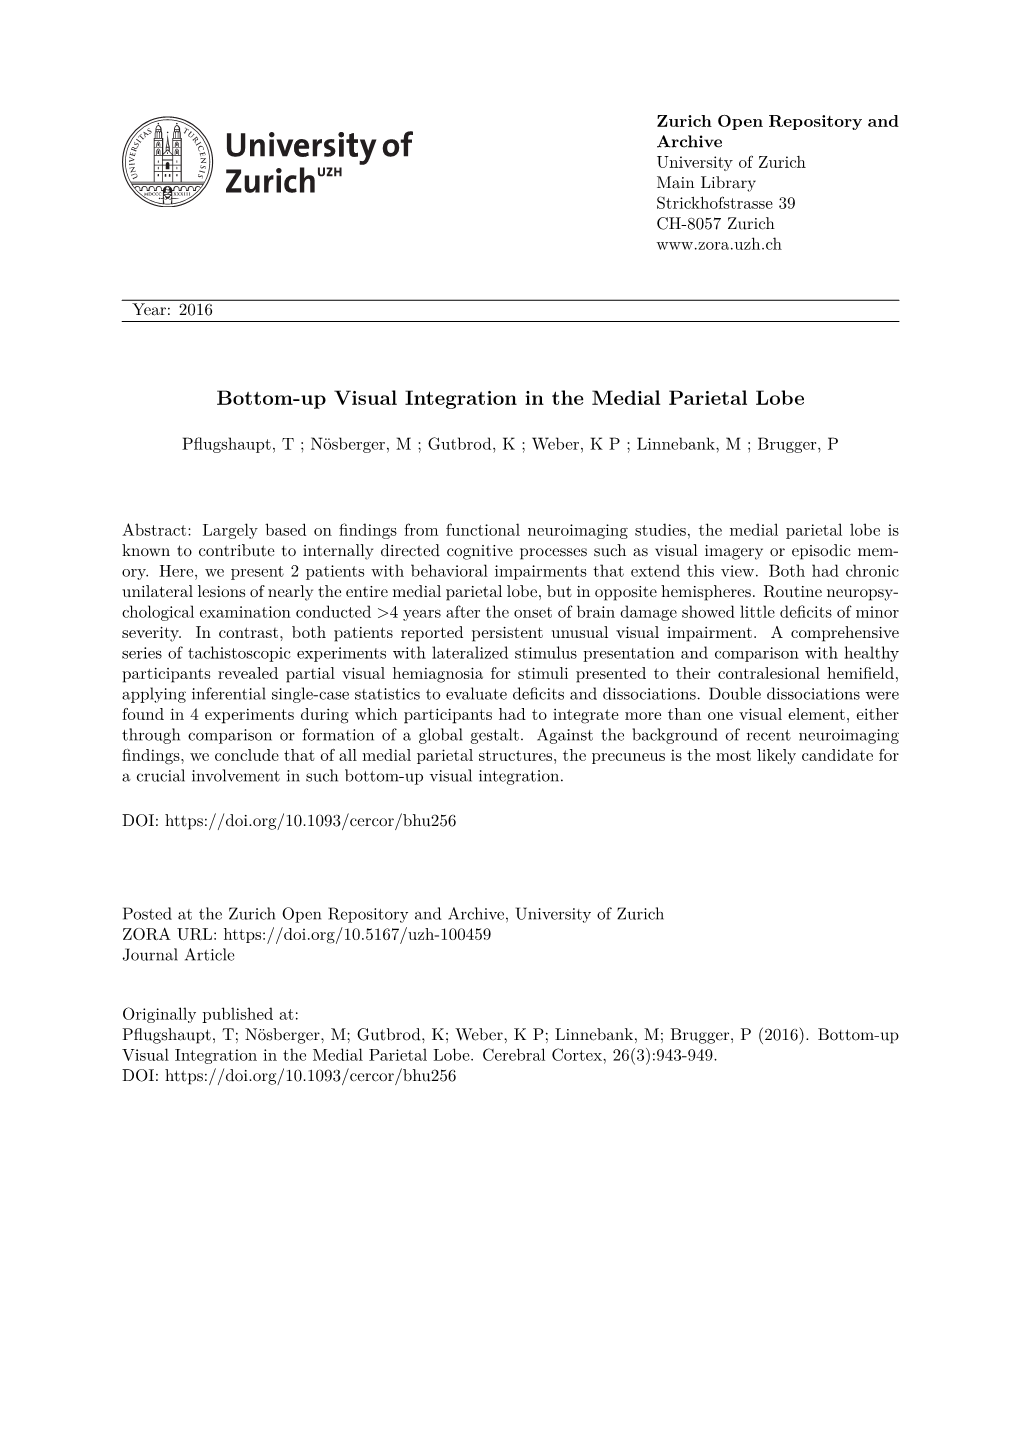 'Bottom-Up Visual Integration in the Medial Parietal Lobe'